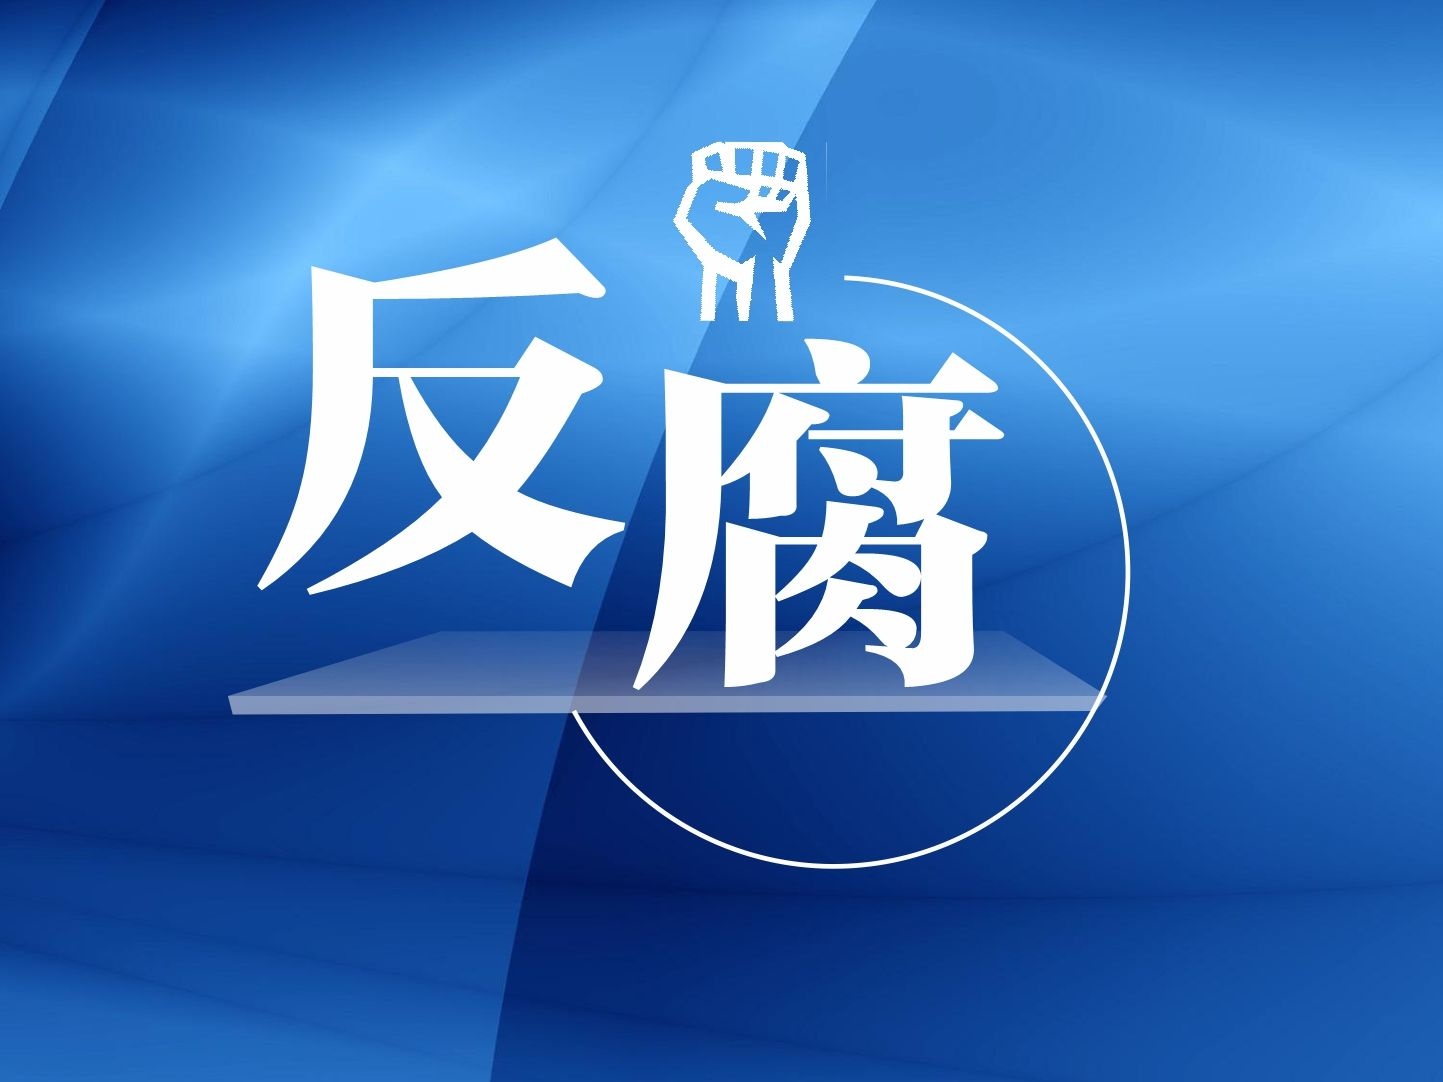 深圳市中级人民法院党组成员、副院长龙光伟接受纪律审查和监察调查